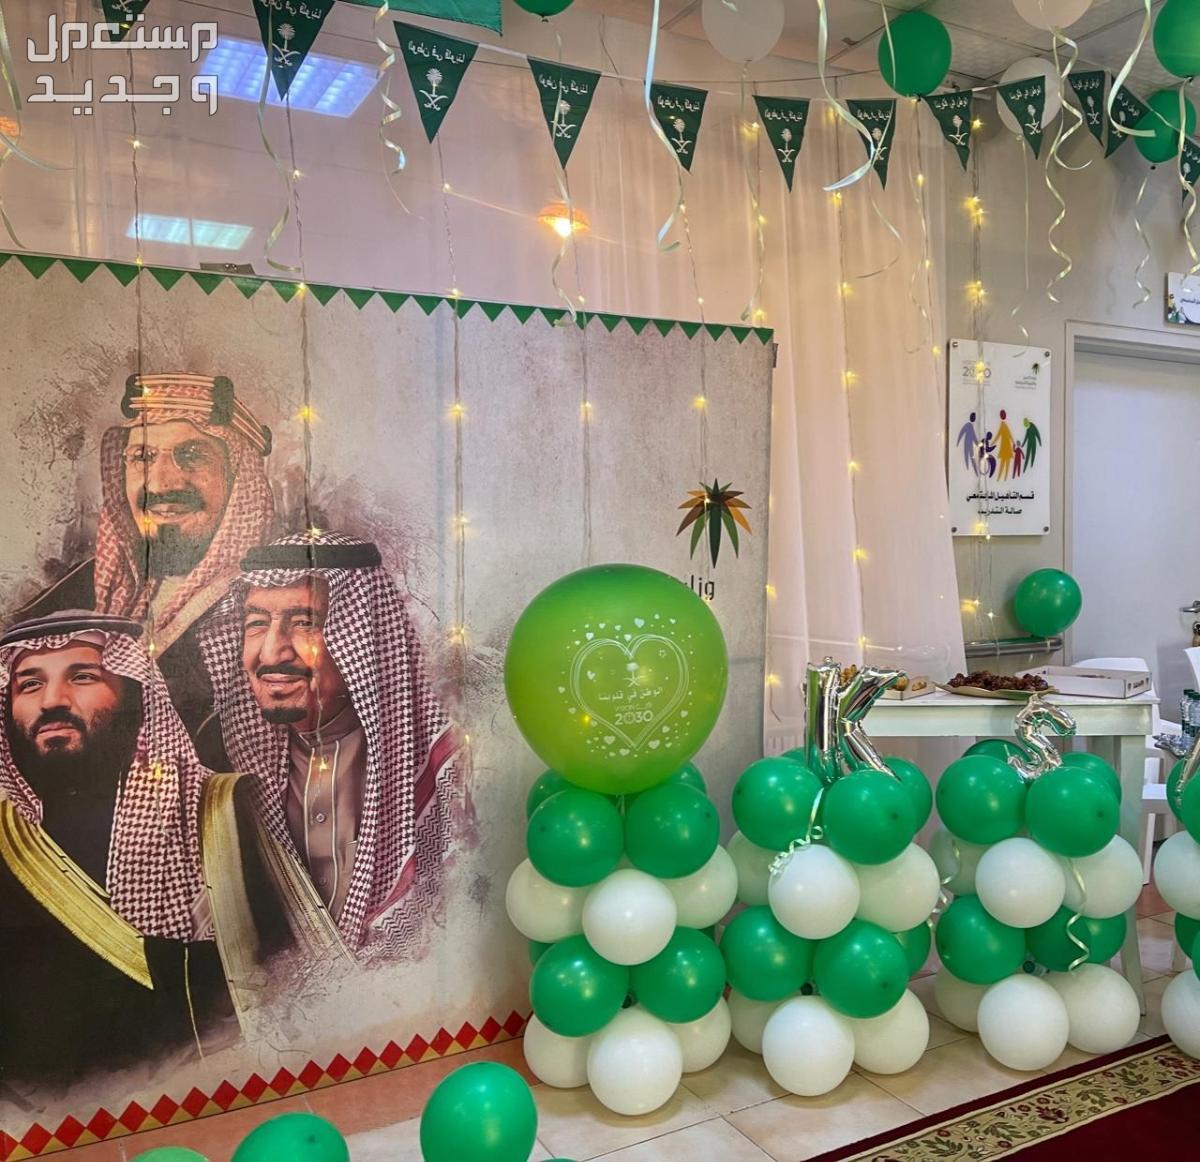 صور ديكورات داخلية بمناسبة اليوم الوطني السعودي 1445 في لبنان ديكورات داخلية بمناسبة اليوم الوطني